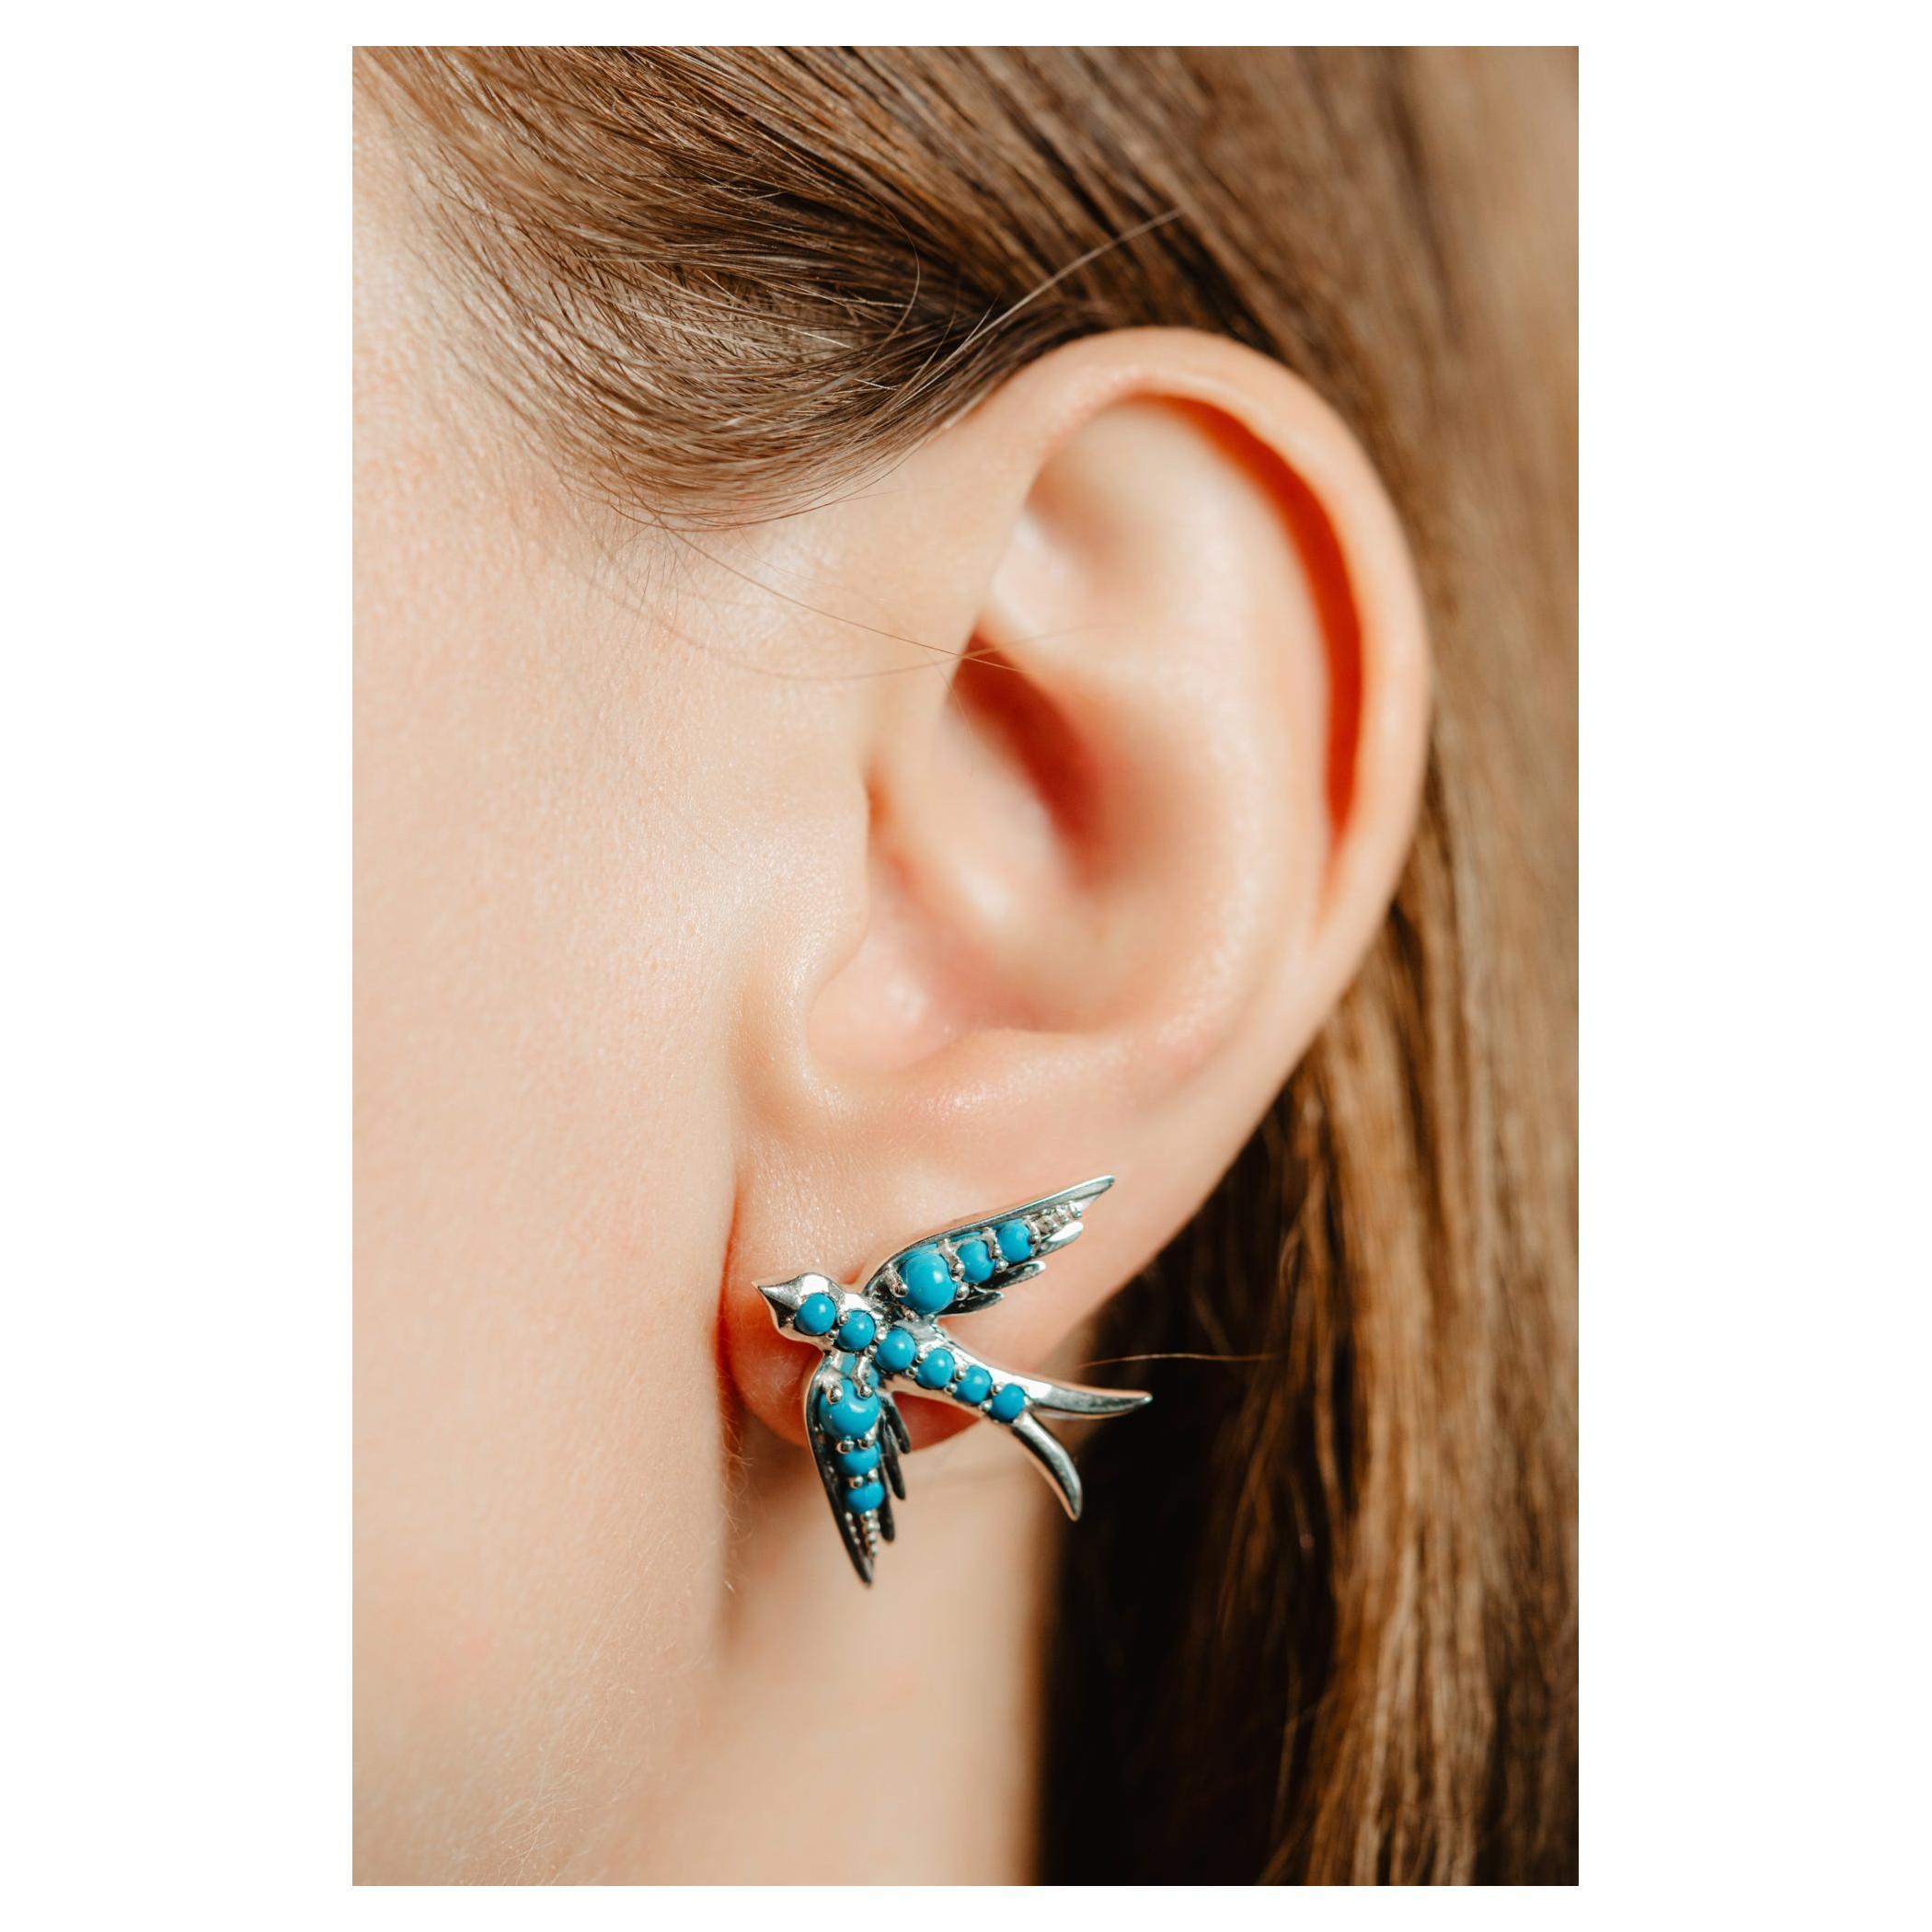 Oversized Sterling Silver Swallow Bird Earrings, Turquoise Swallow Earrings